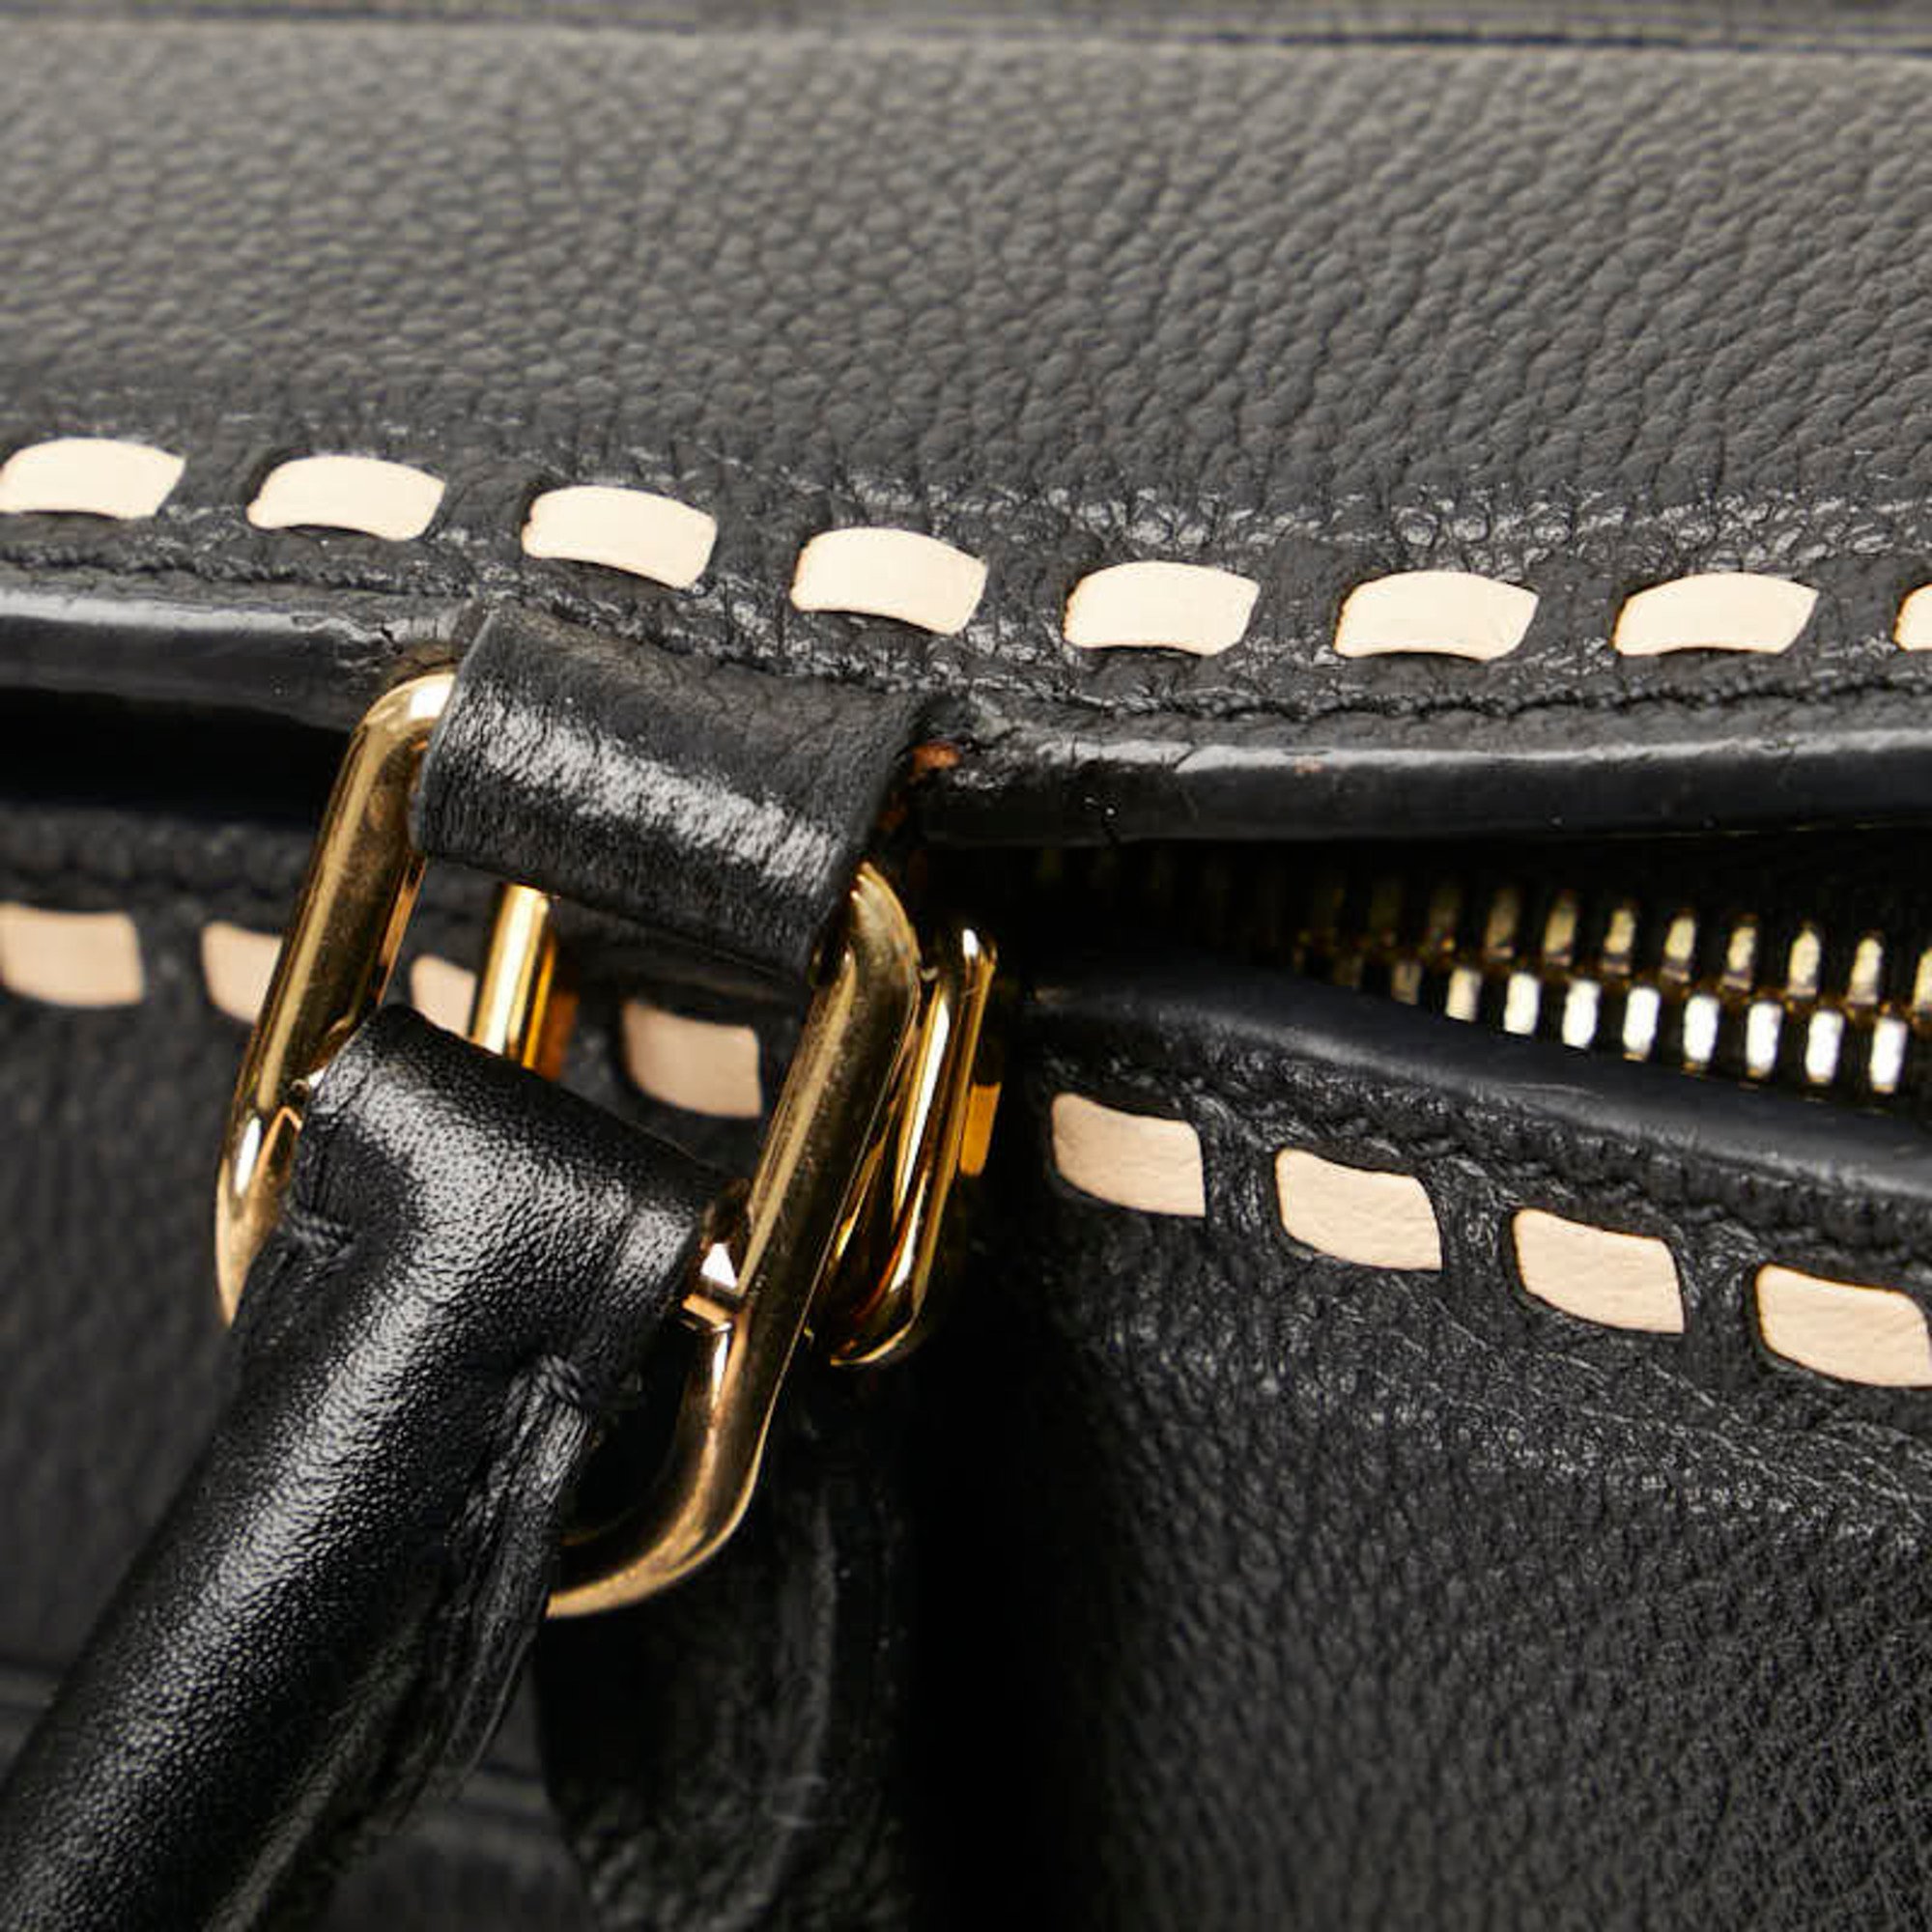 Louis Vuitton Monogram Empreinte Vosges Handbag Shoulder Bag M41491 Noir Black Calf Leather Women's LOUIS VUITTON